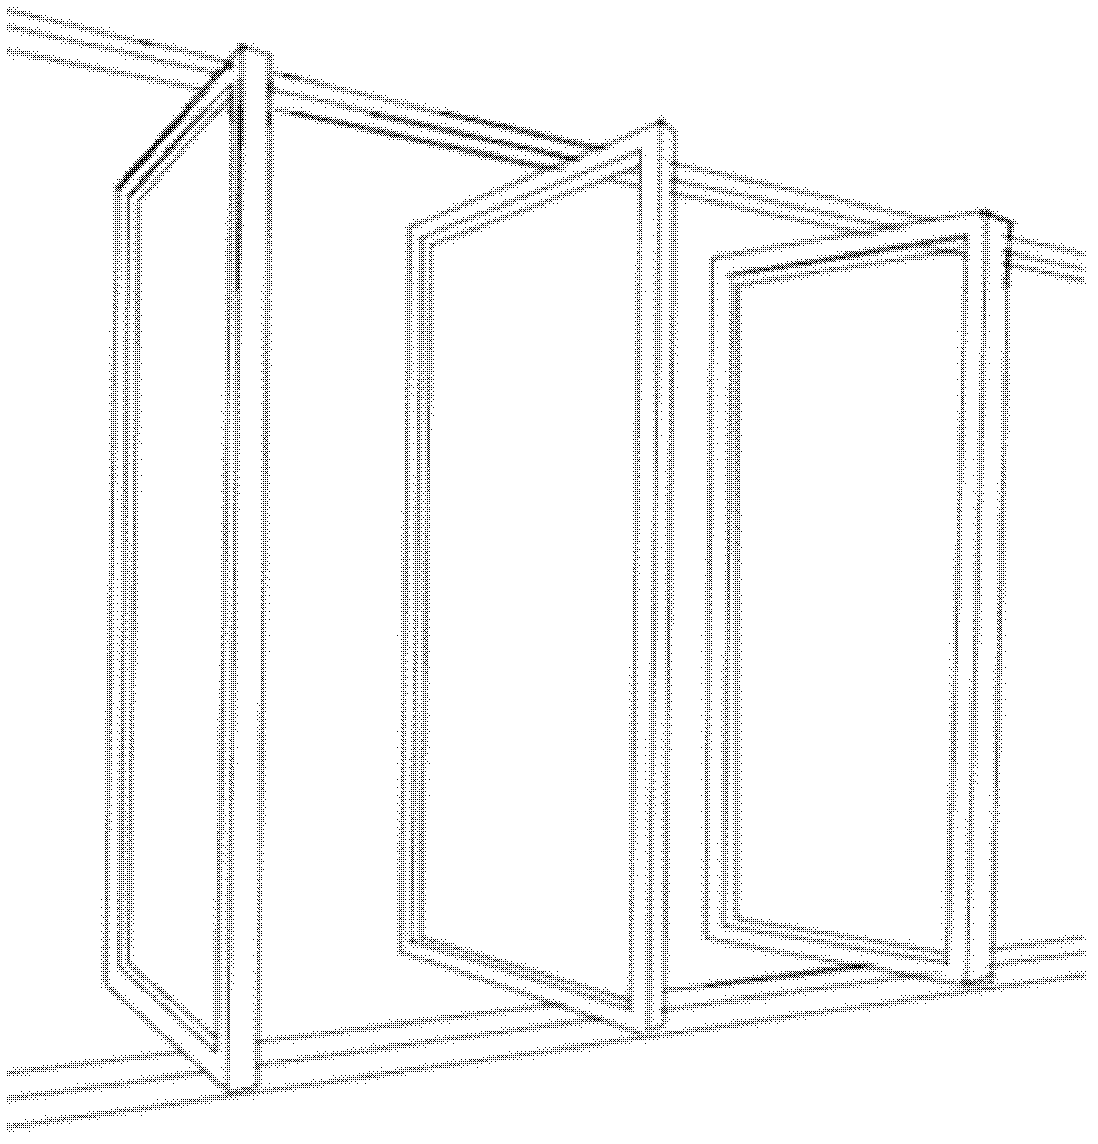 Novel middle-spindle rotating type multi-hinge window